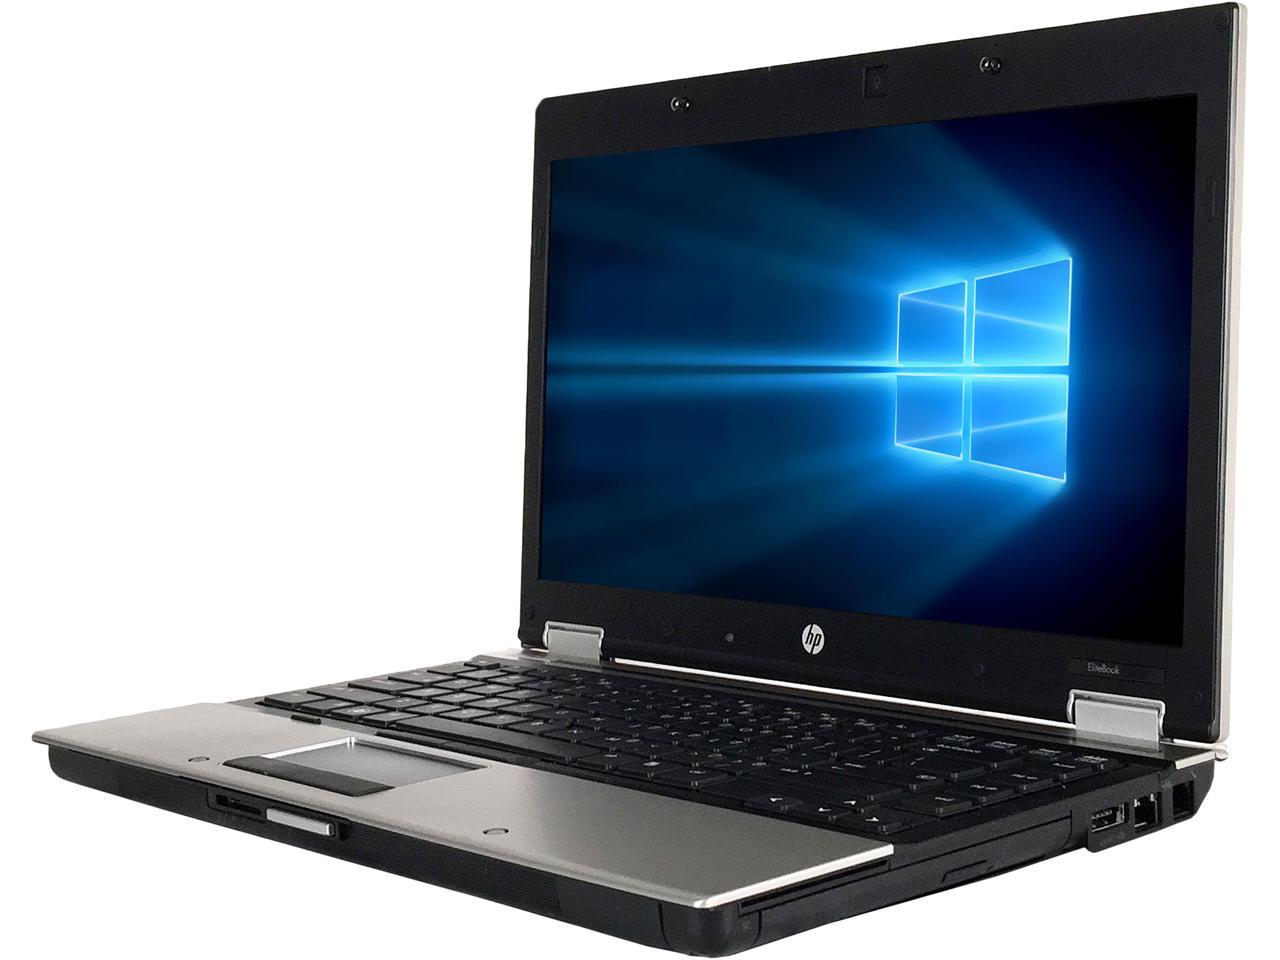 تعريف وايرلس Hp 8440P / HP EliteBook 8440p - Get the best ...